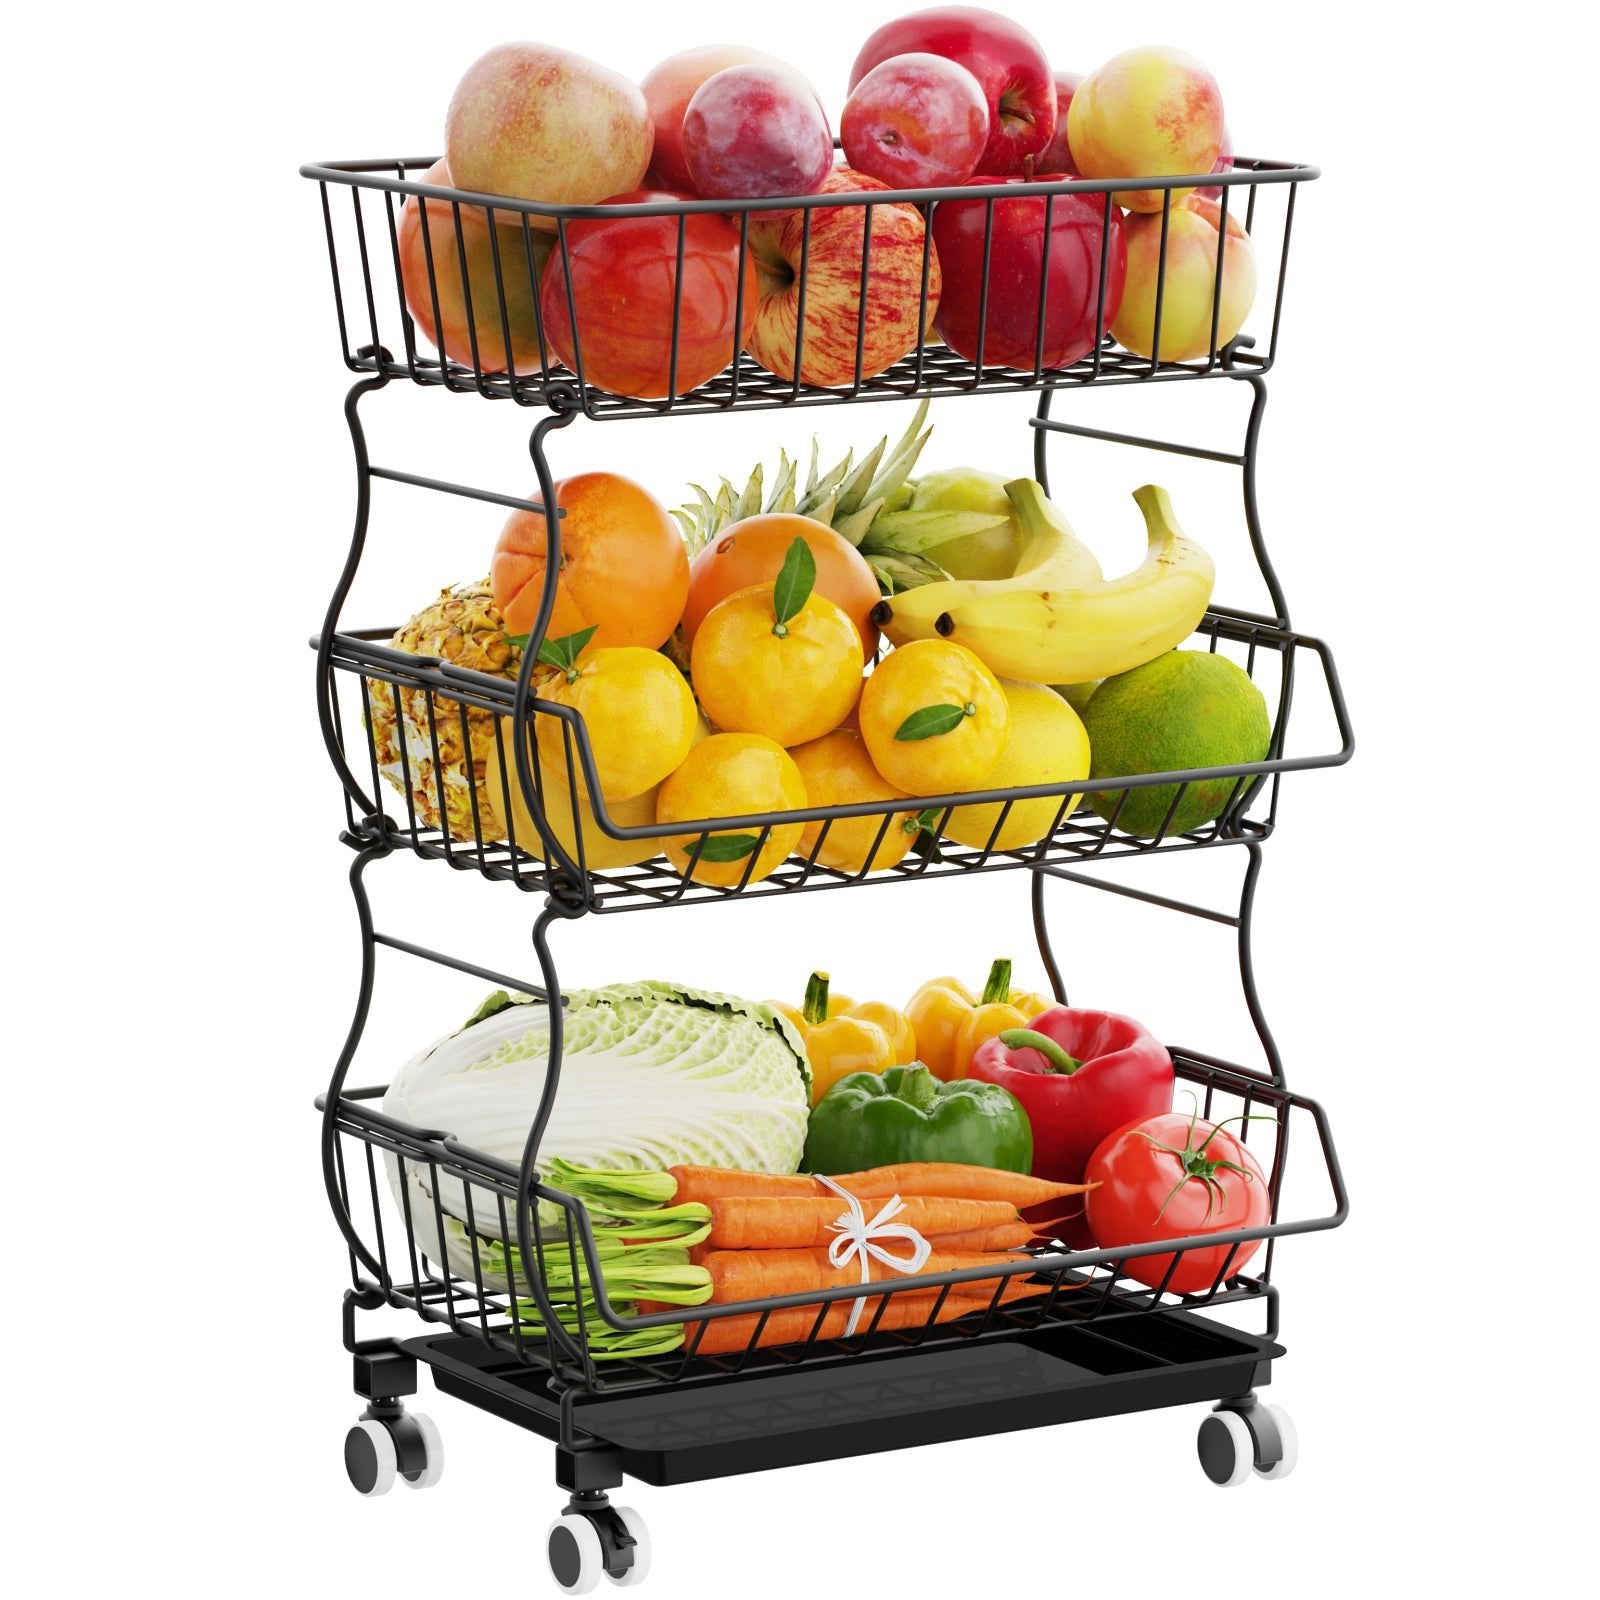 Frutas y verduras siempre bien almacenadas con este carrito